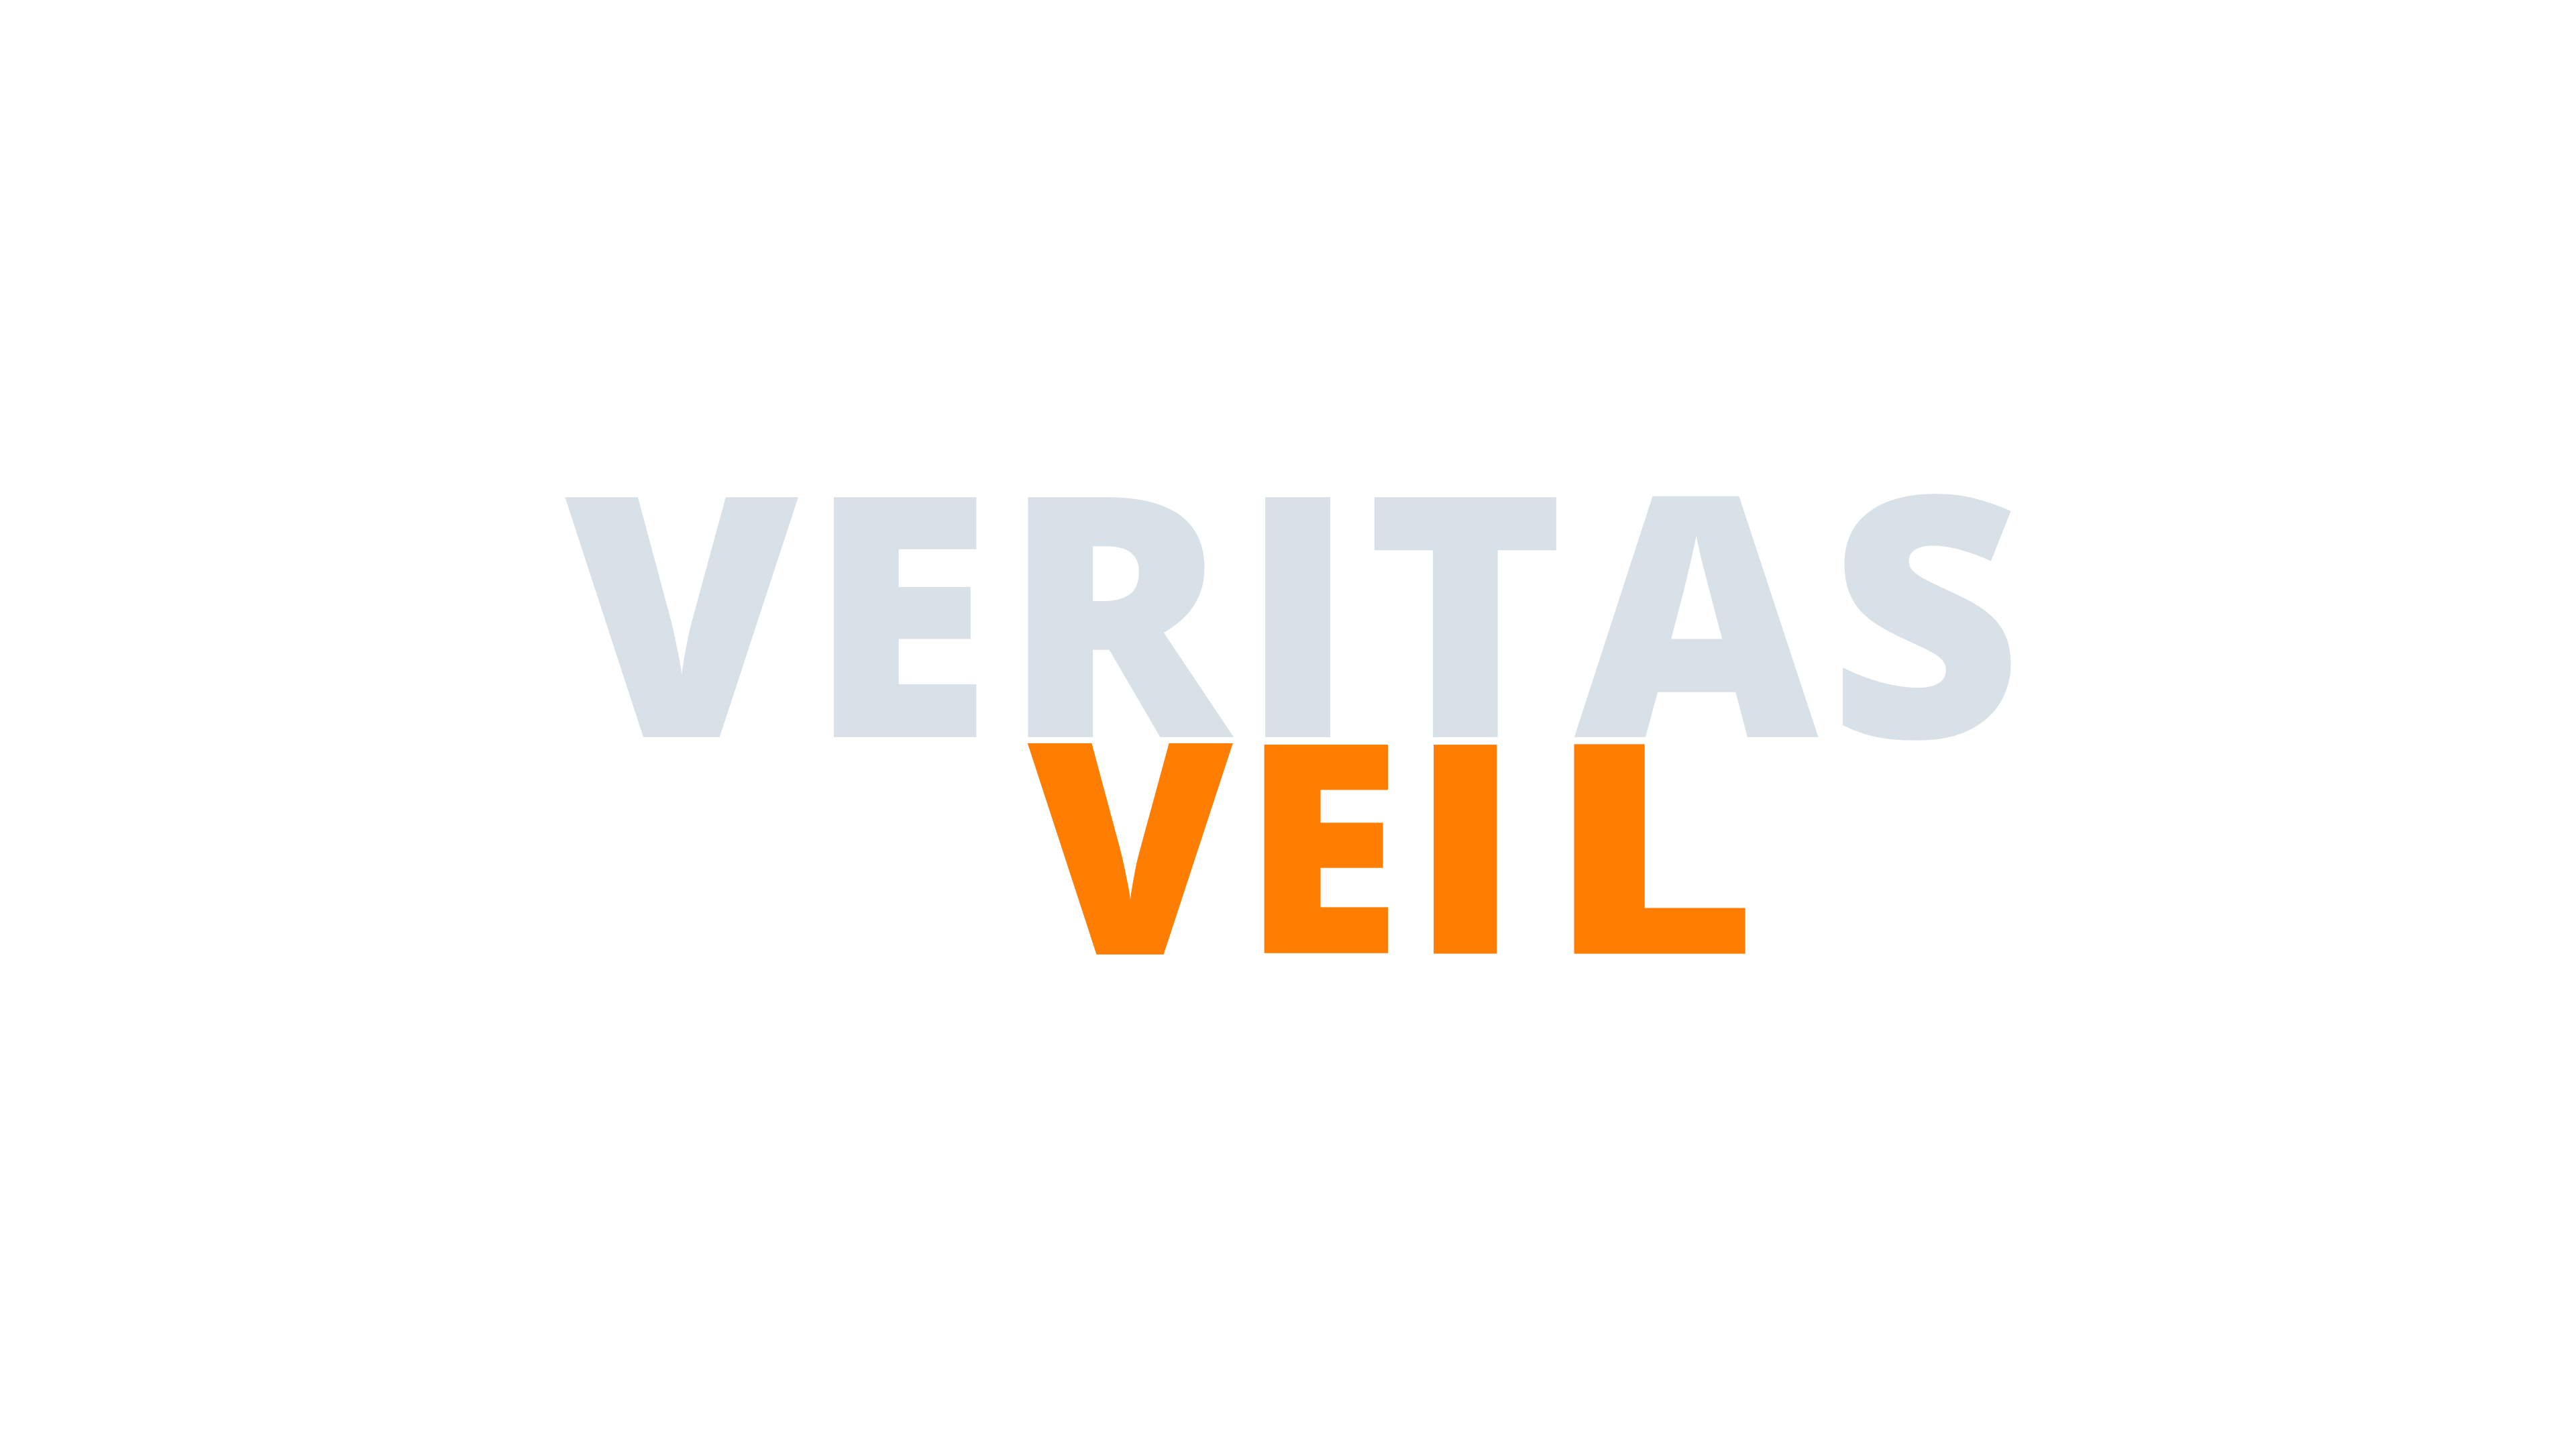 Veritas Veil - Prototype Stage Playtesting Page